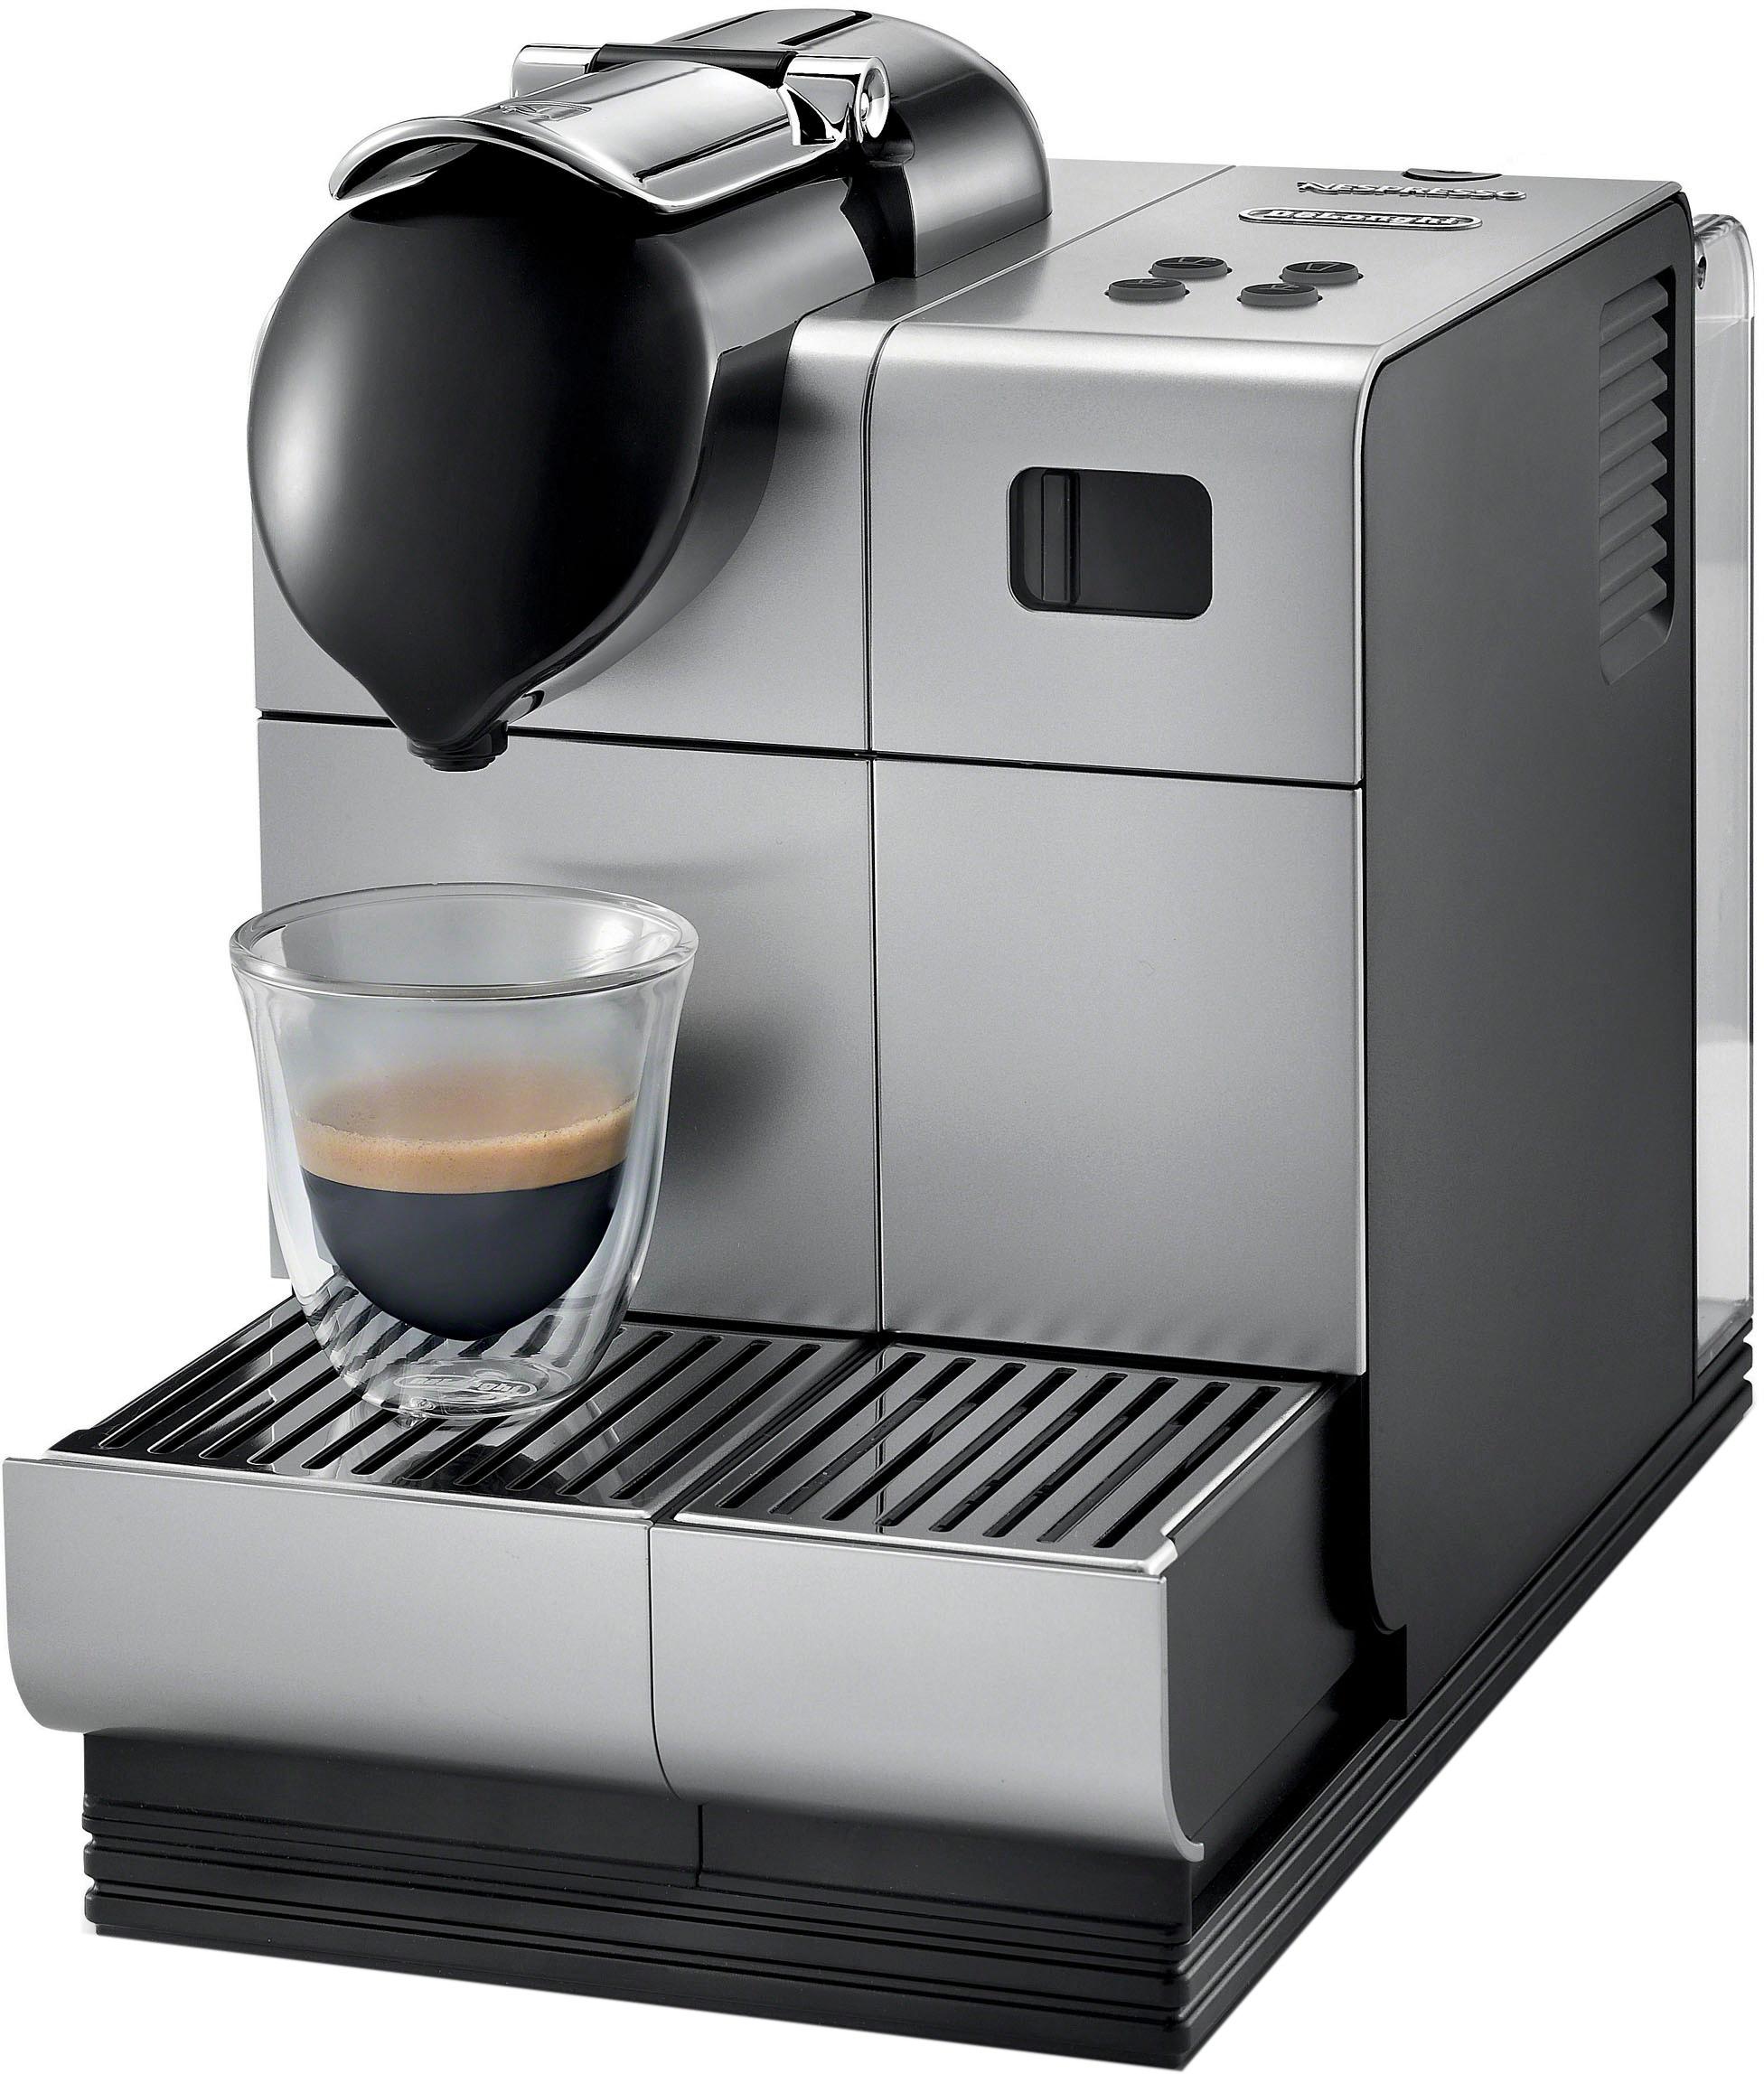 Coffee Machine Nespresso Delonghi Lattissima Manual Digital - Review ...